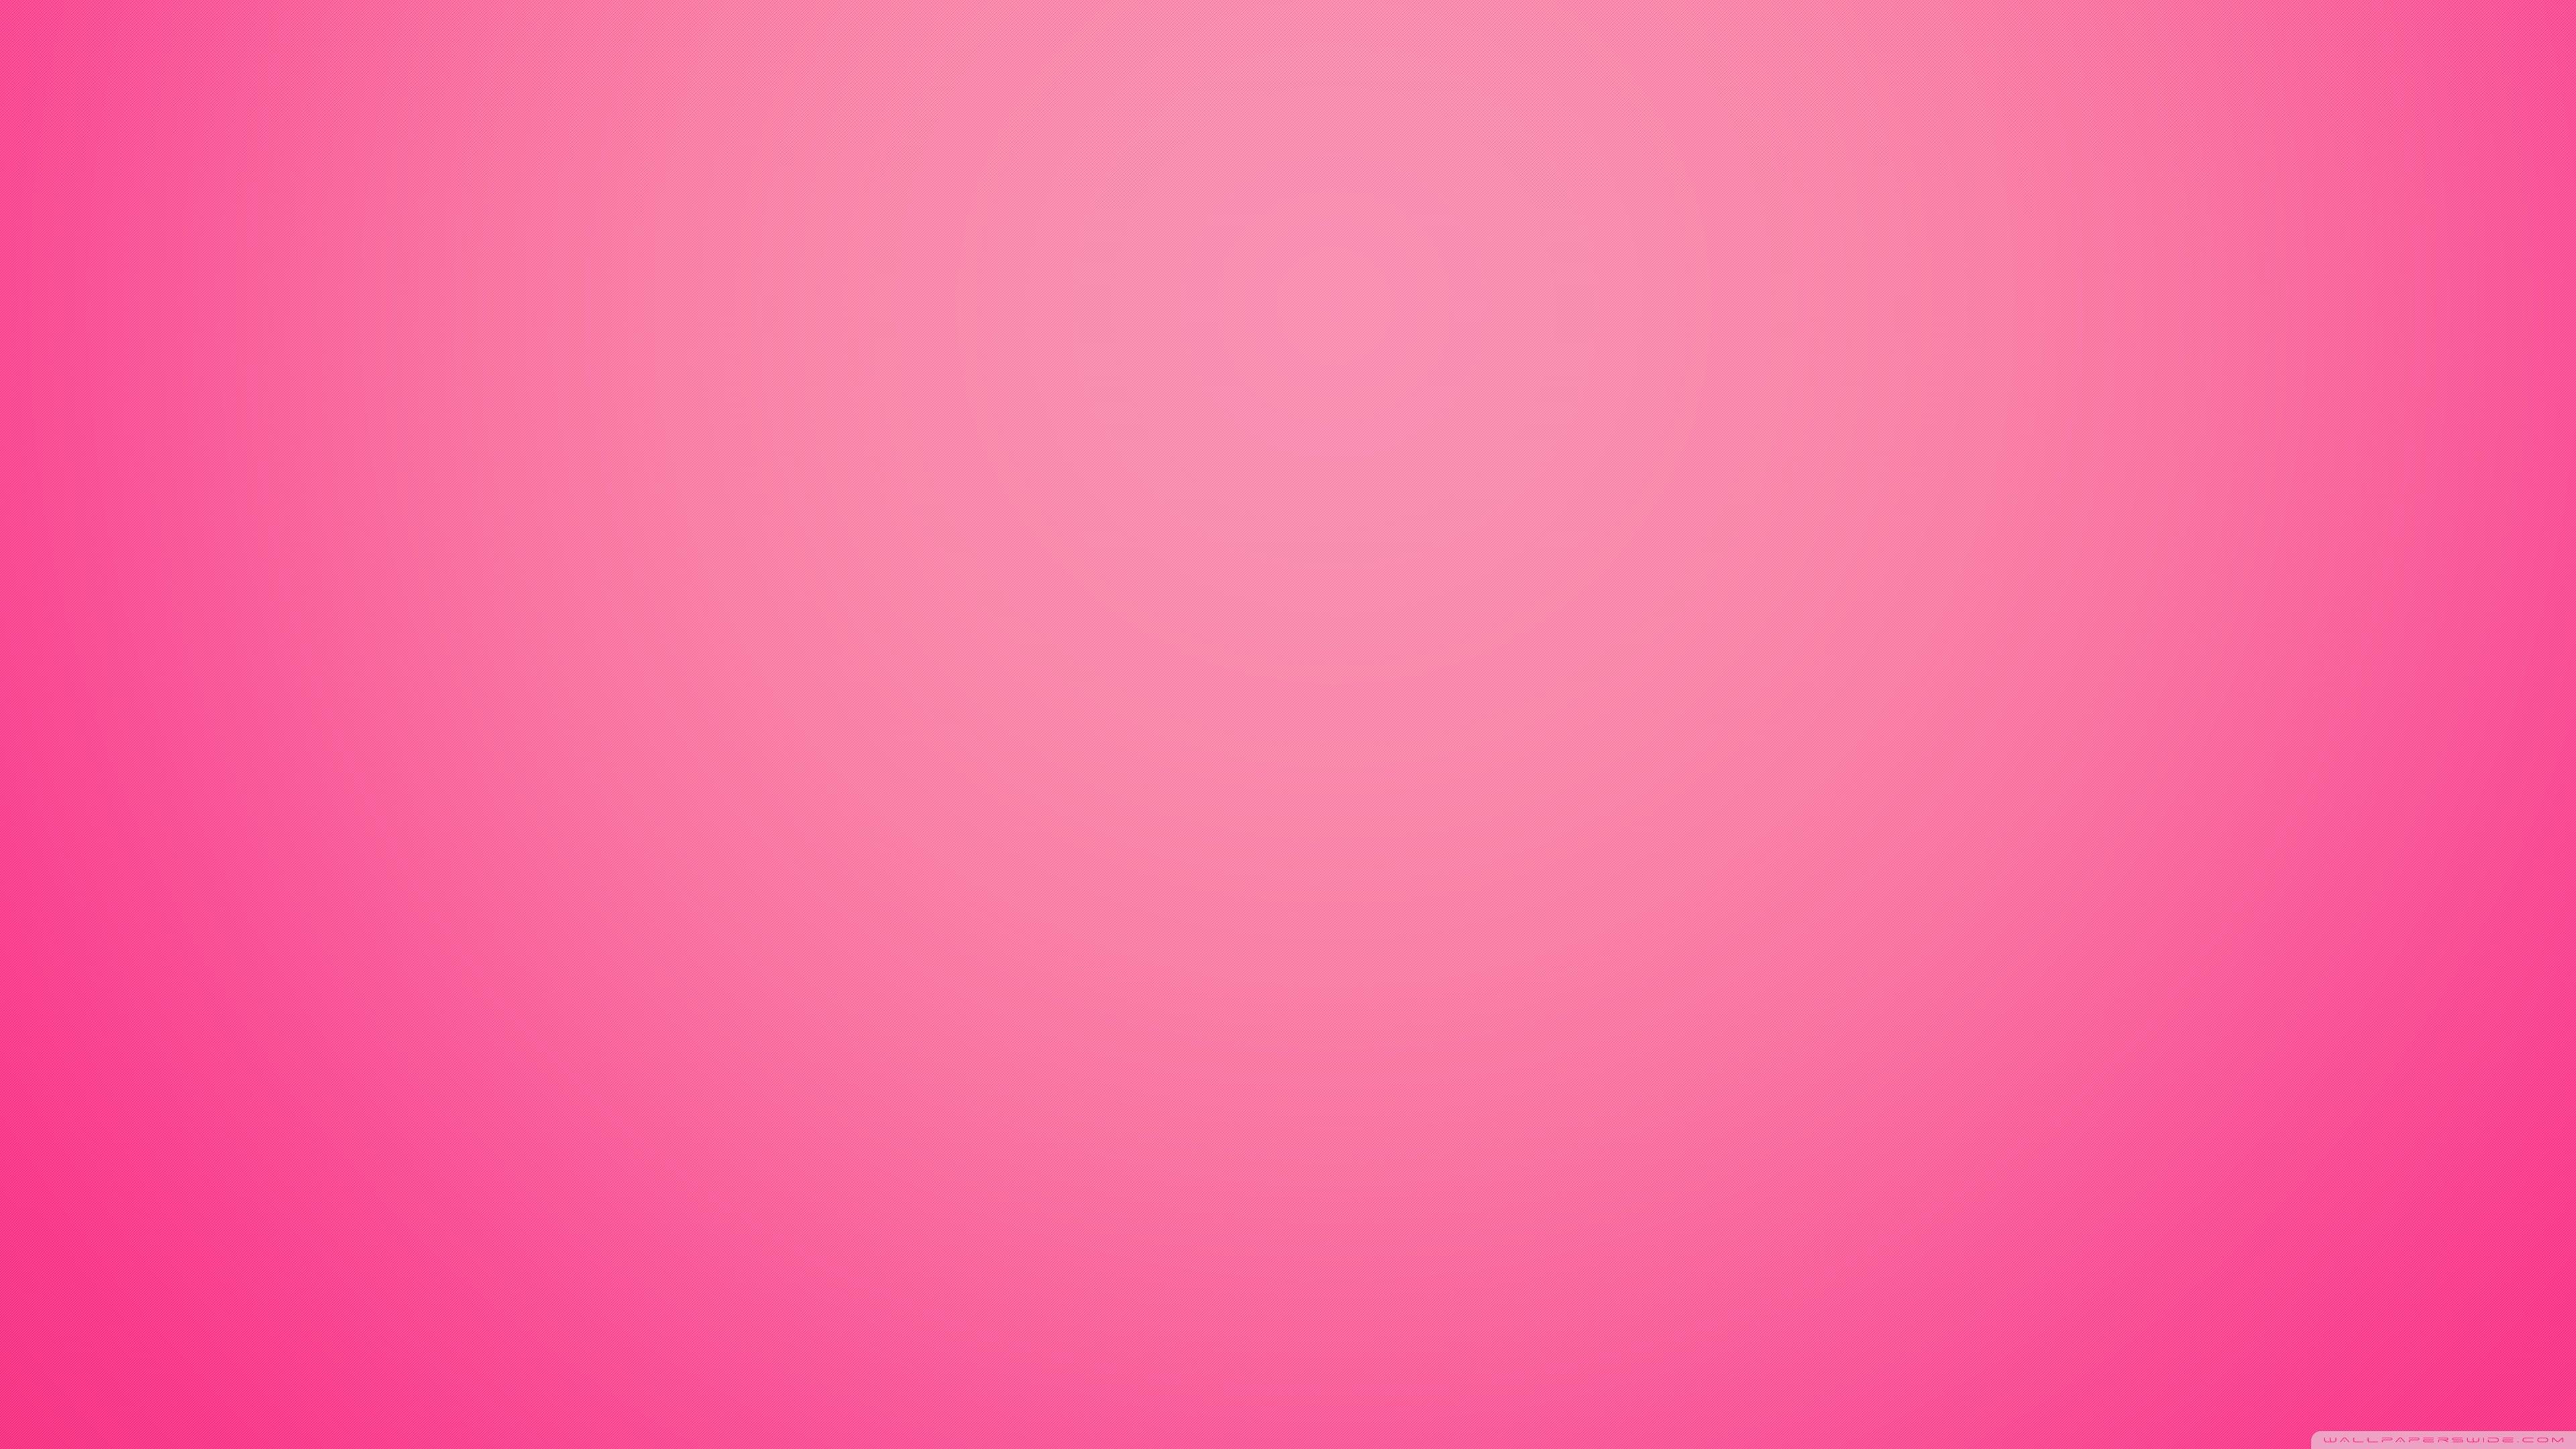 Pink Gradient Wallpapers - Wallpaper Cave